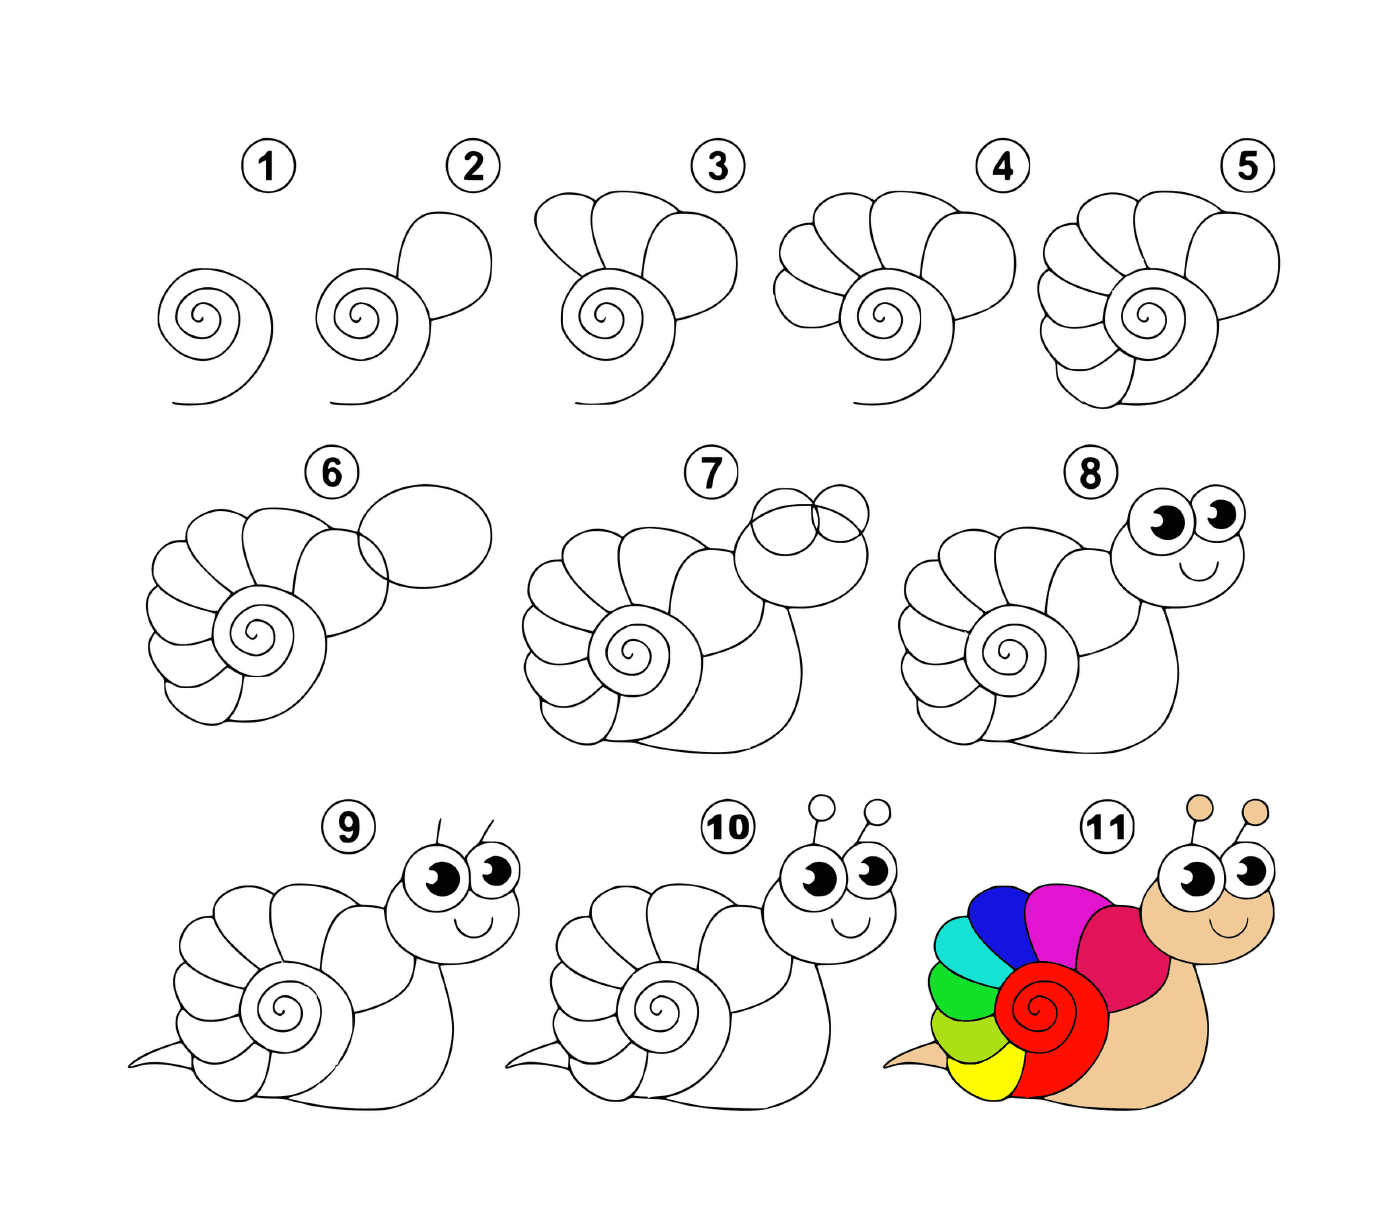  Cómo dibujar un caracol fácilmente 